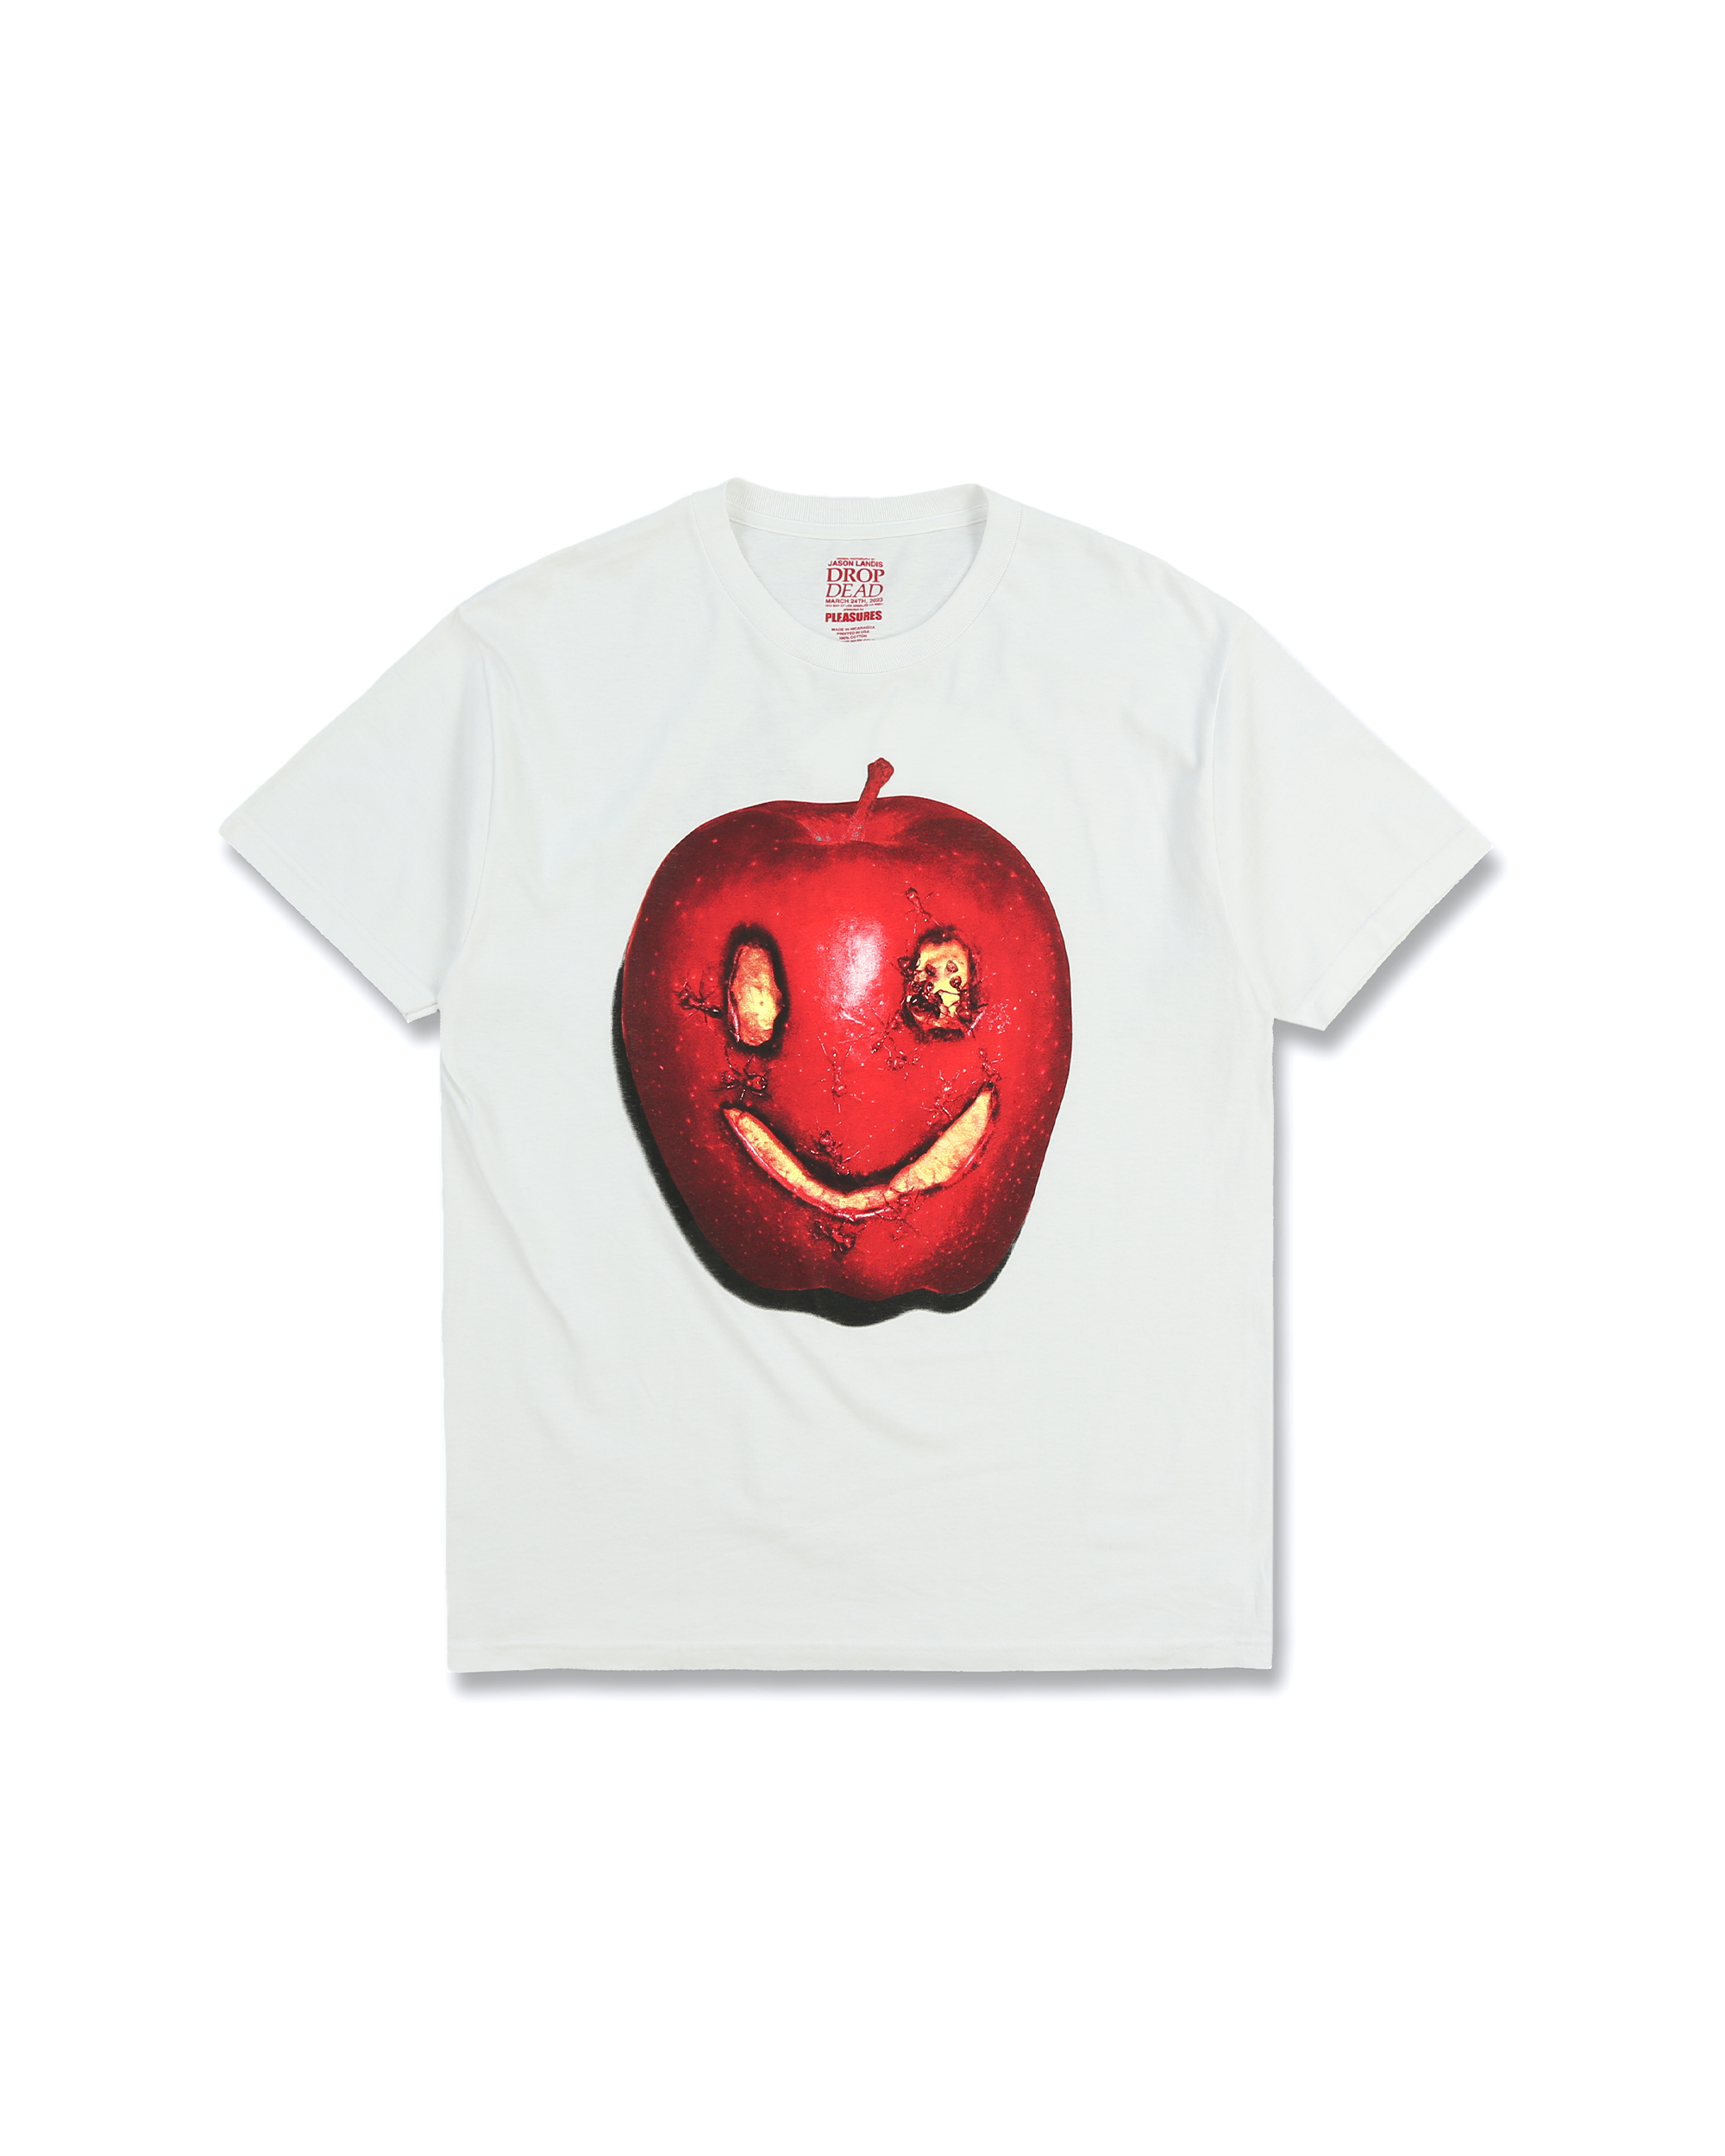 Apples T-Shirt - White